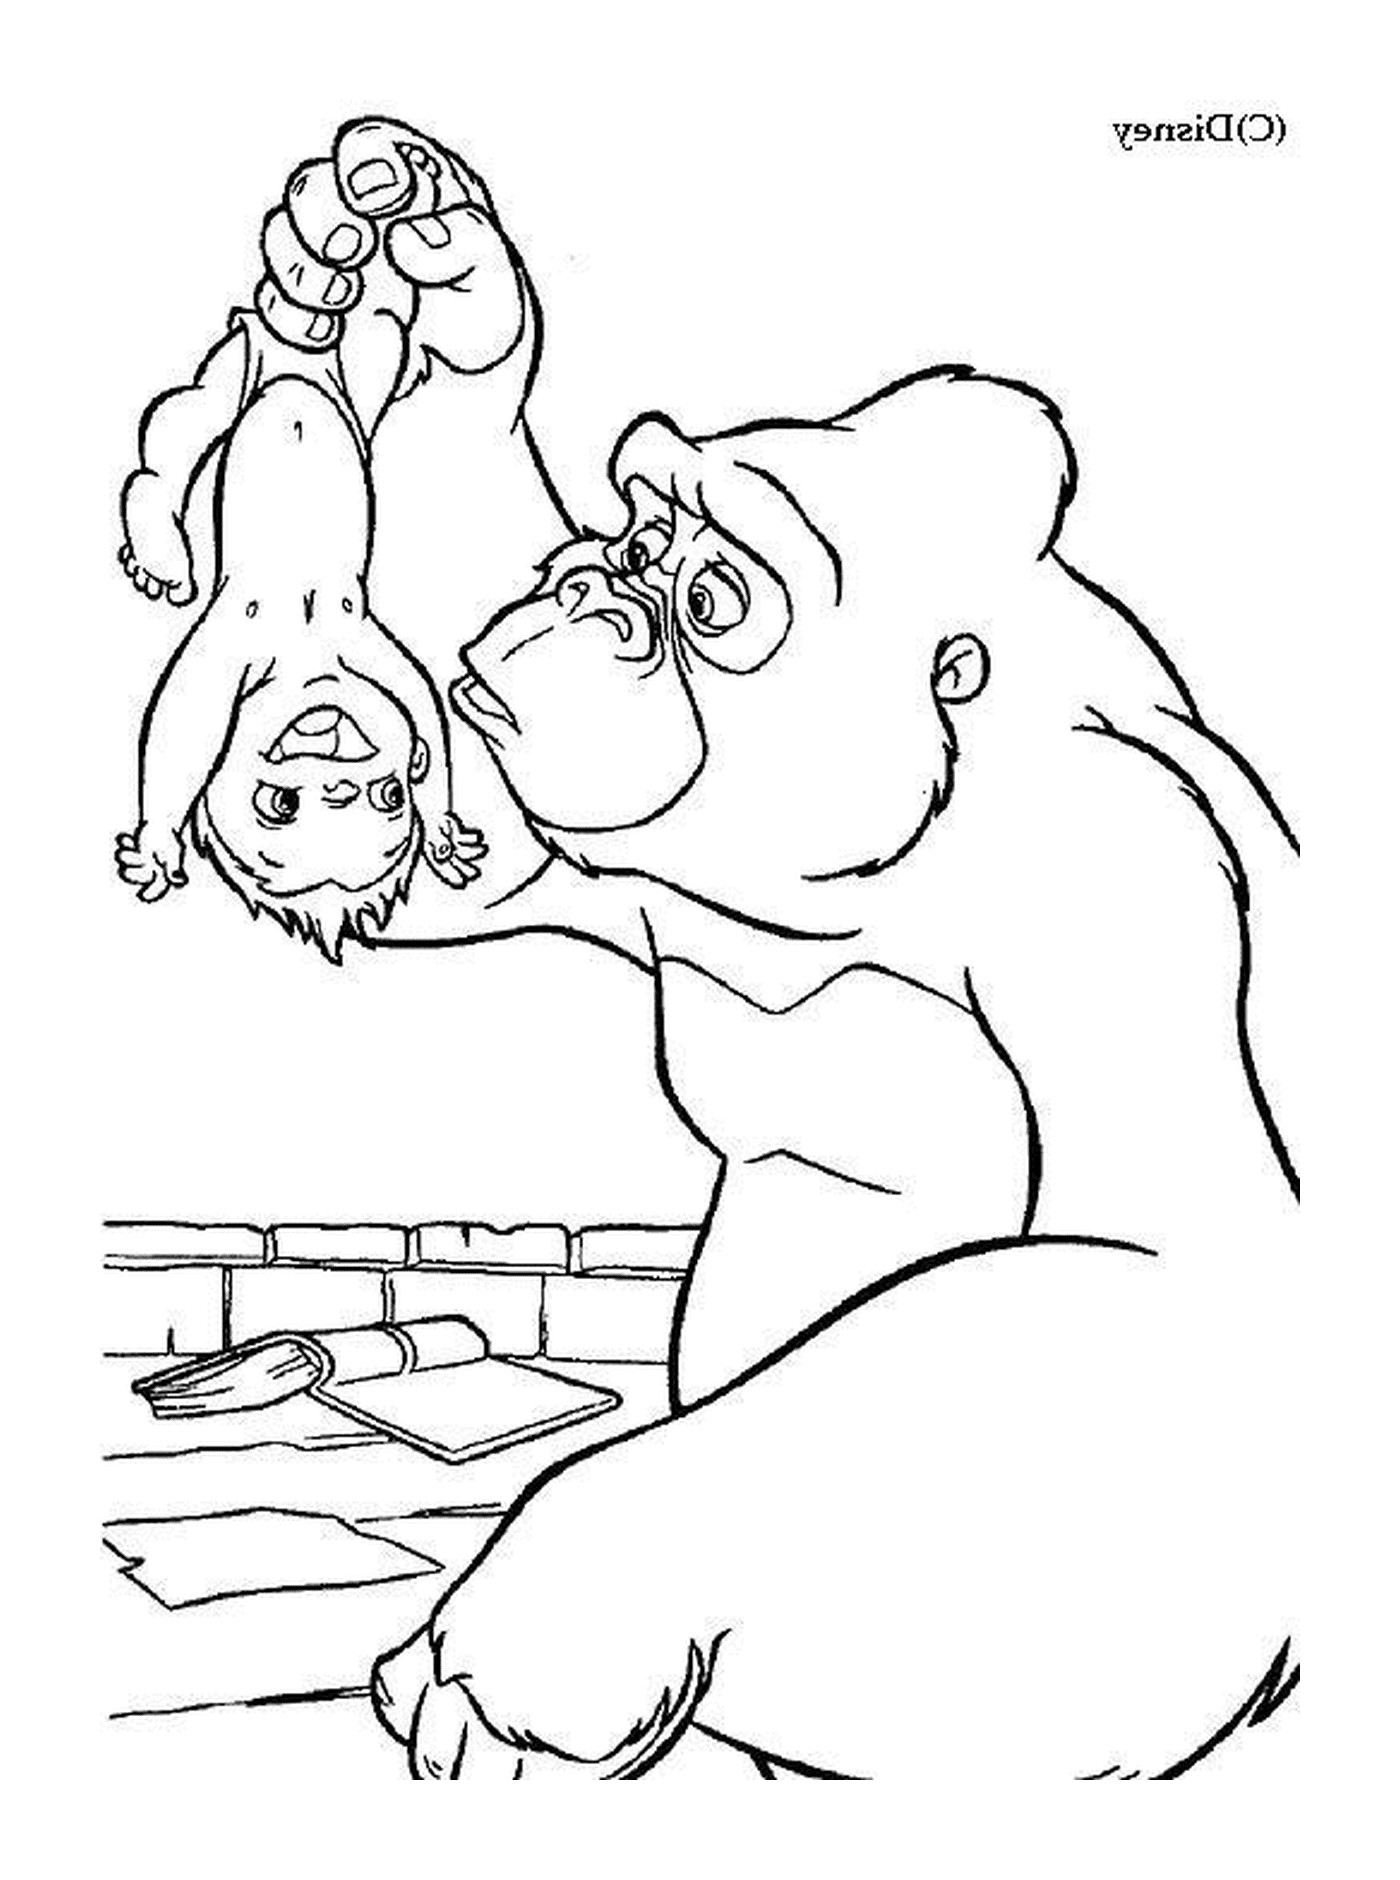   Gorille et garçon qui jouent ensemble 